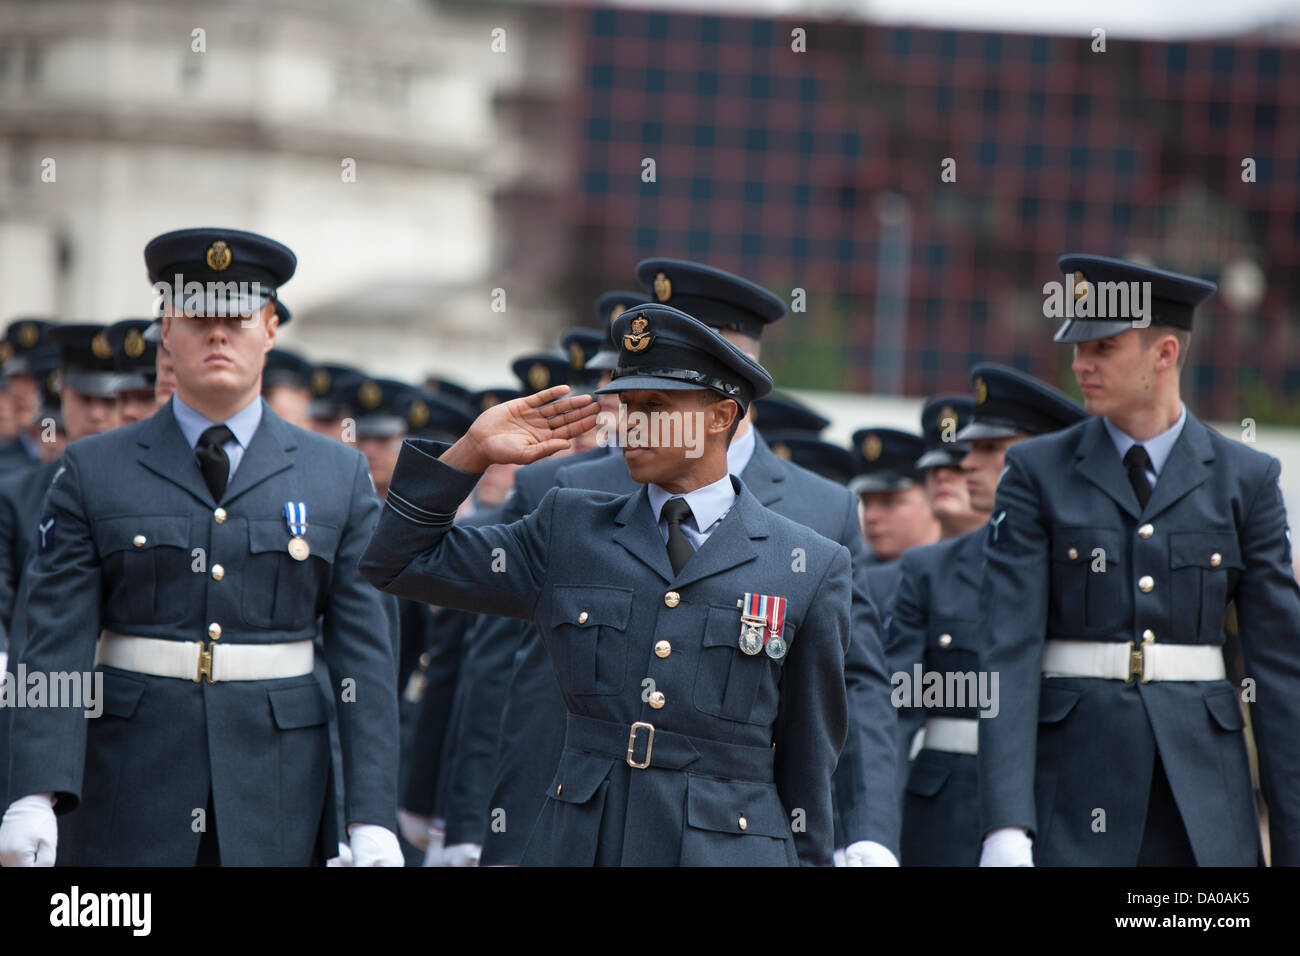 Birmingham, UK. 29th June, 2013. Members of the RAF take the salute in ...